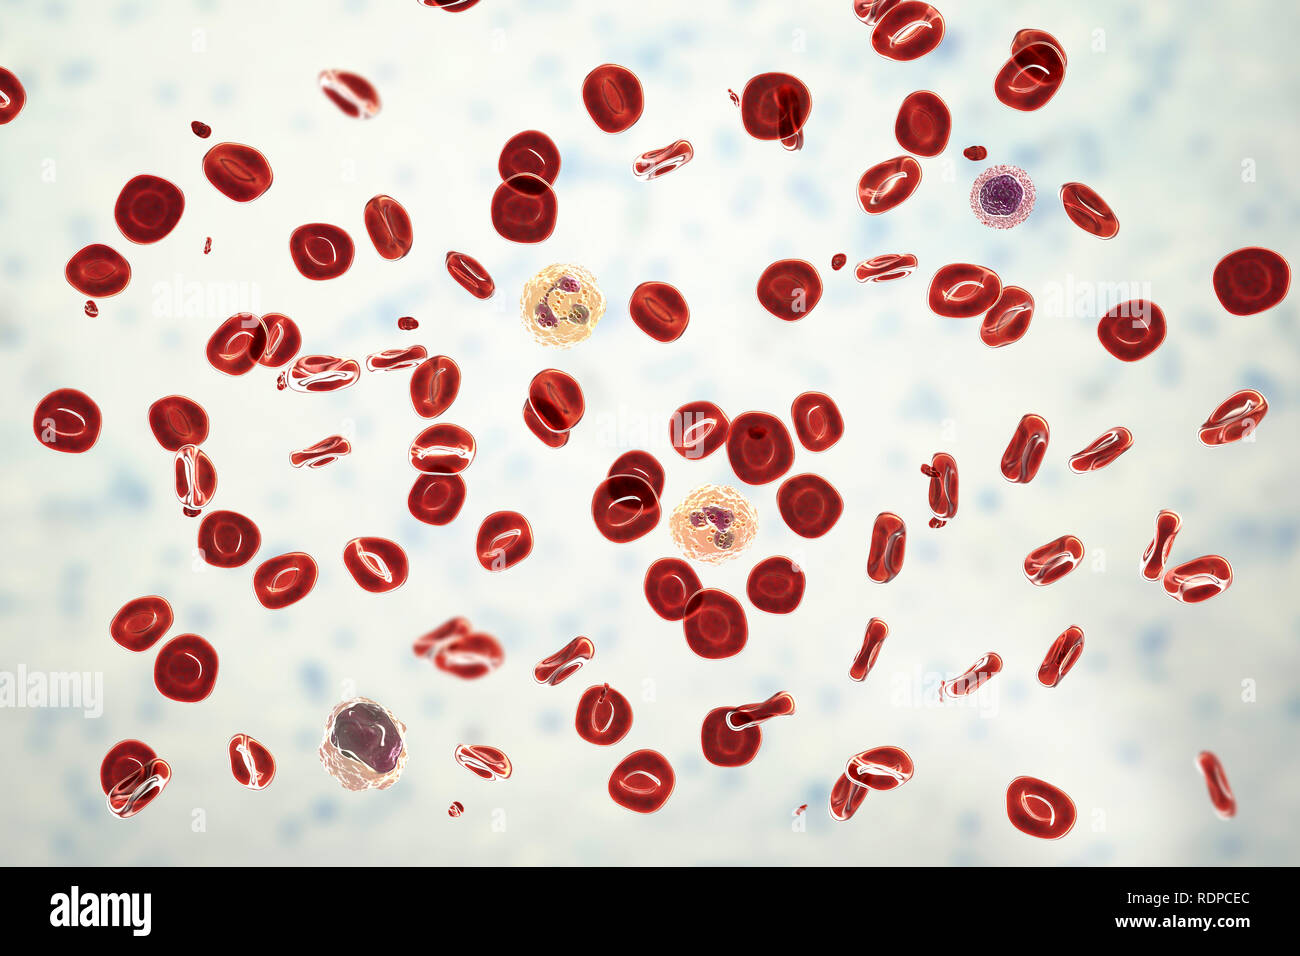 Frottis sanguin normal. Illustration de l'ordinateur, les globules rouges,  les plaquettes (petites particules rouges), les neutrophiles (deux cellules  de sang blanches au centre), des monocytes (bas gauche) et de lymphocytes  (à droite